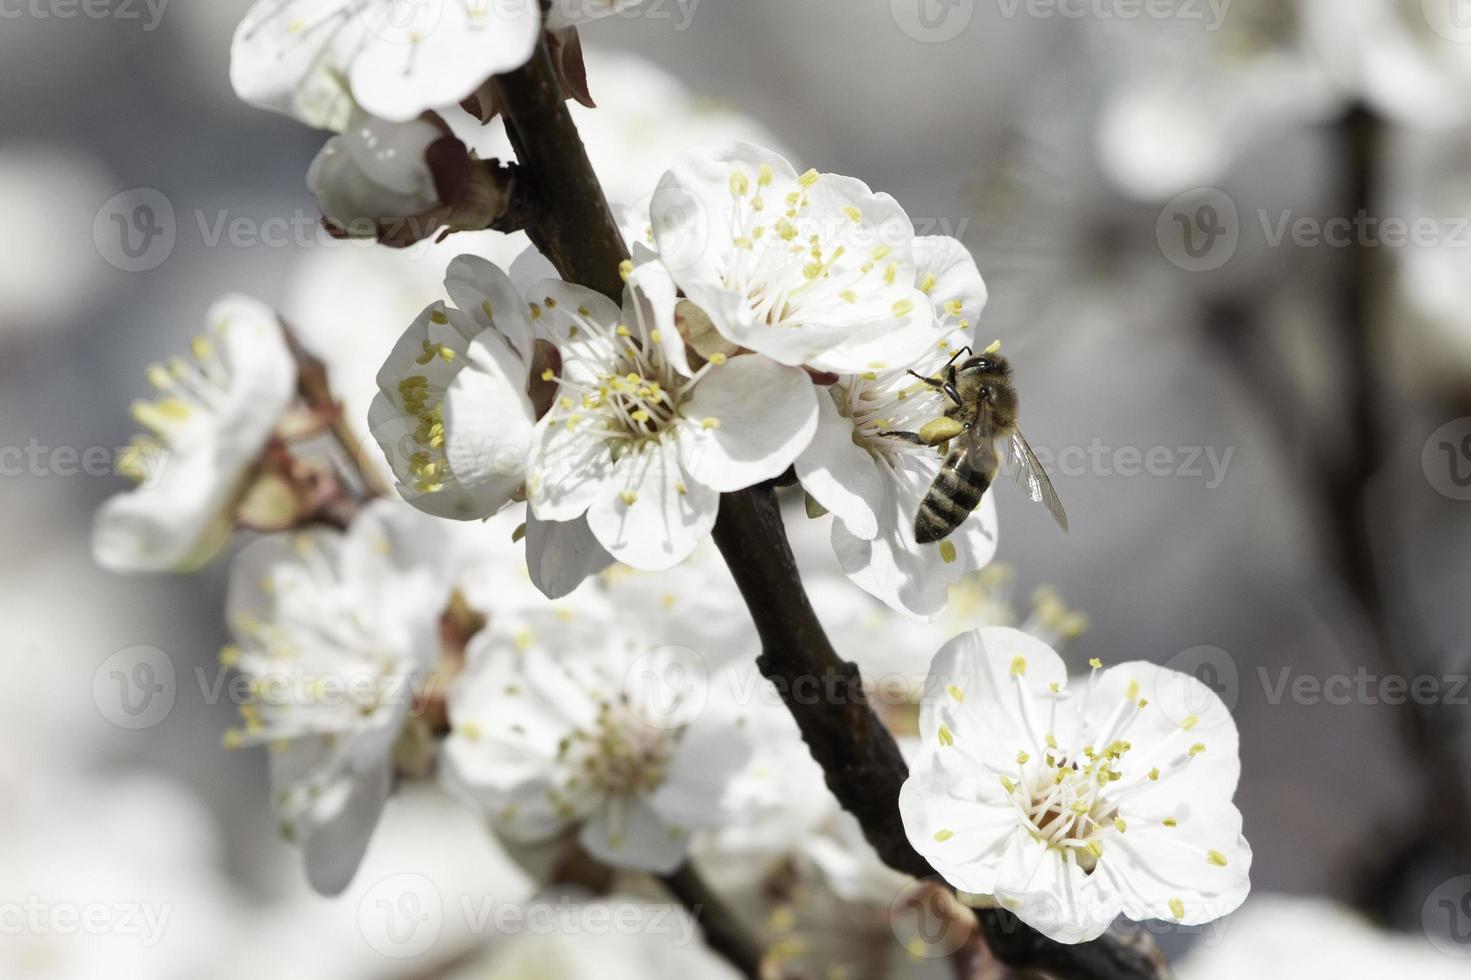 ape sul fiore dell'albicocco foto